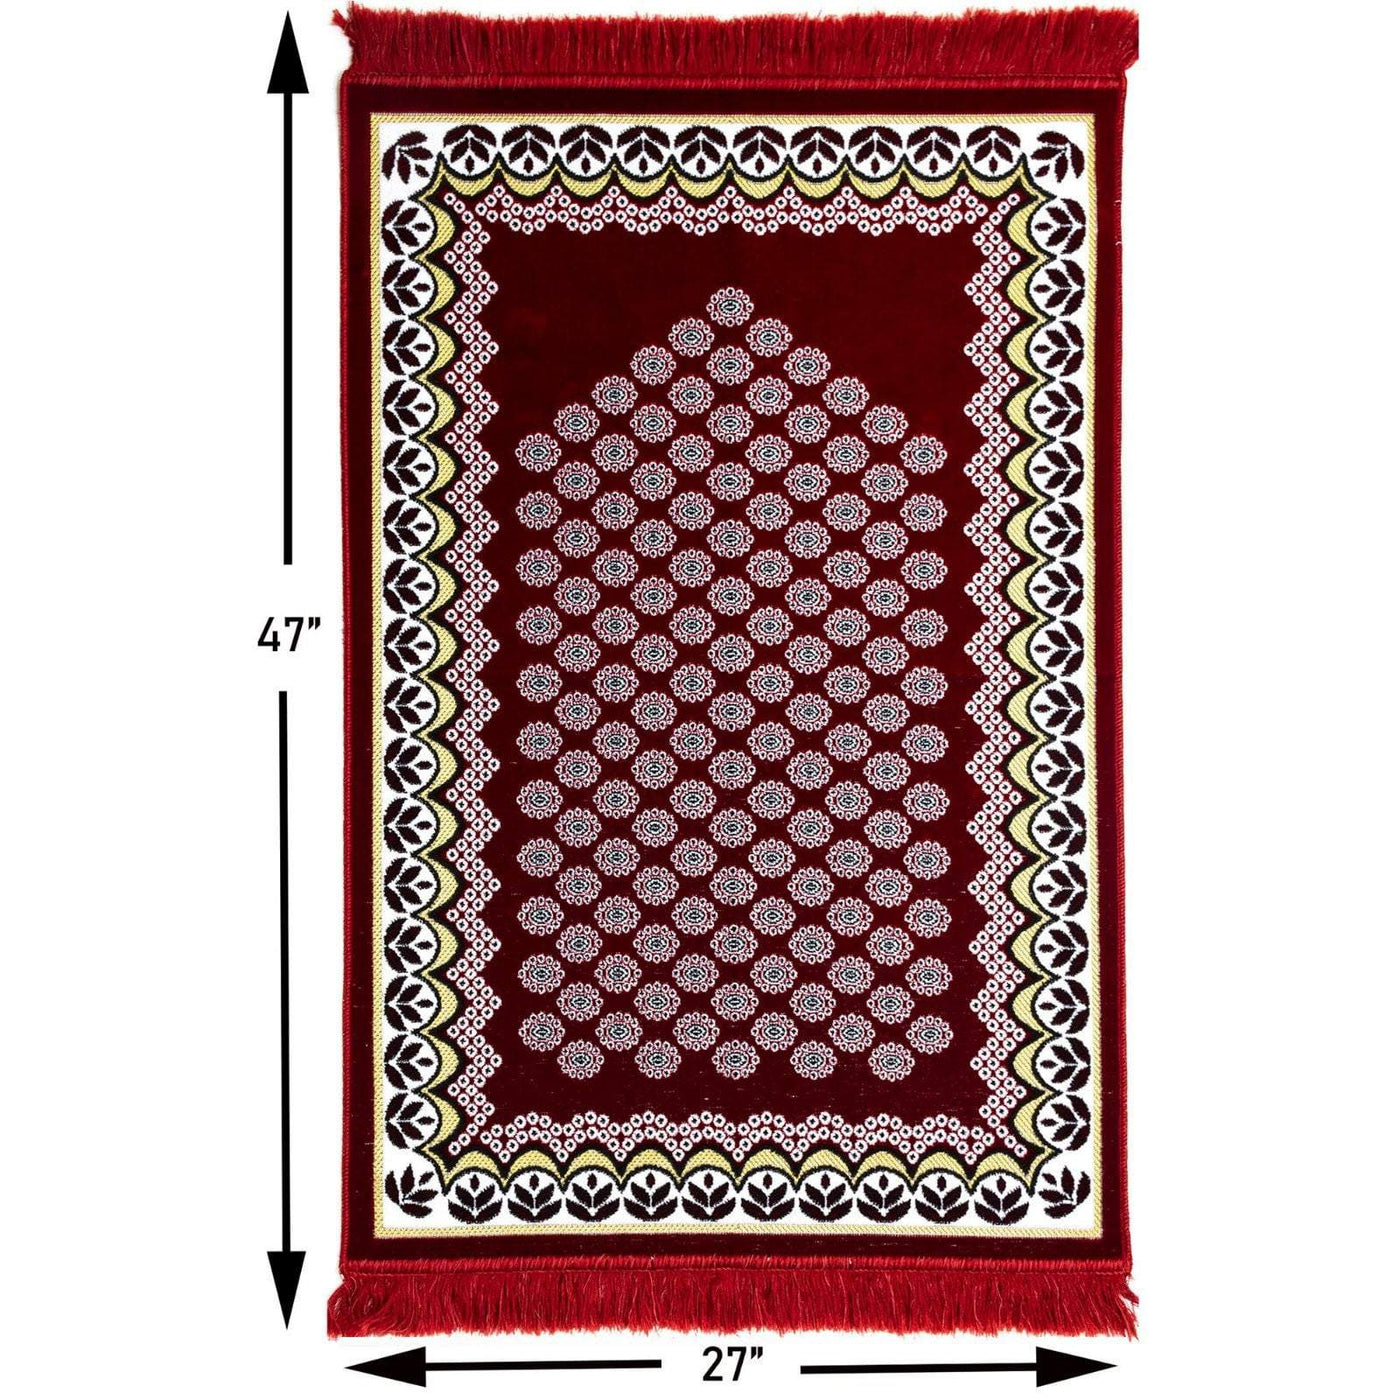 Modefa Prayer Rug Red Velvet Floral Daisy Arch Islamic Prayer Rug - Red